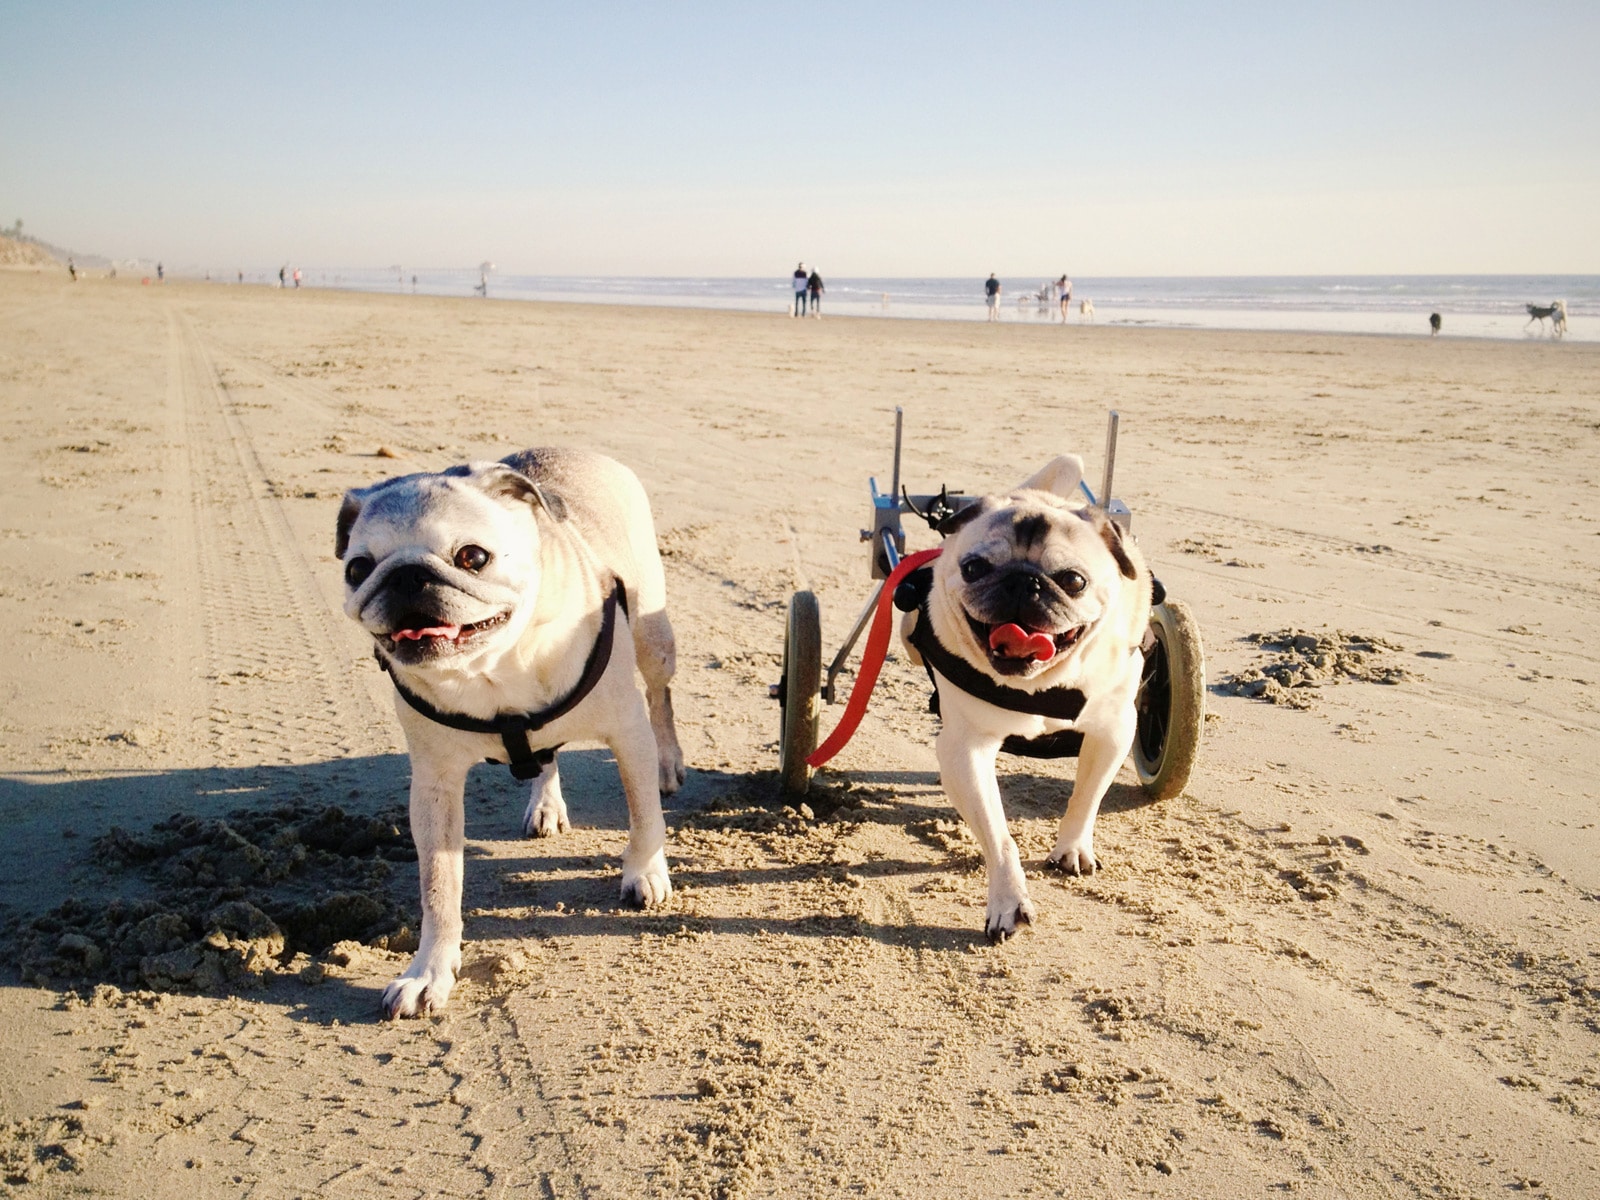 Pugs on the beach